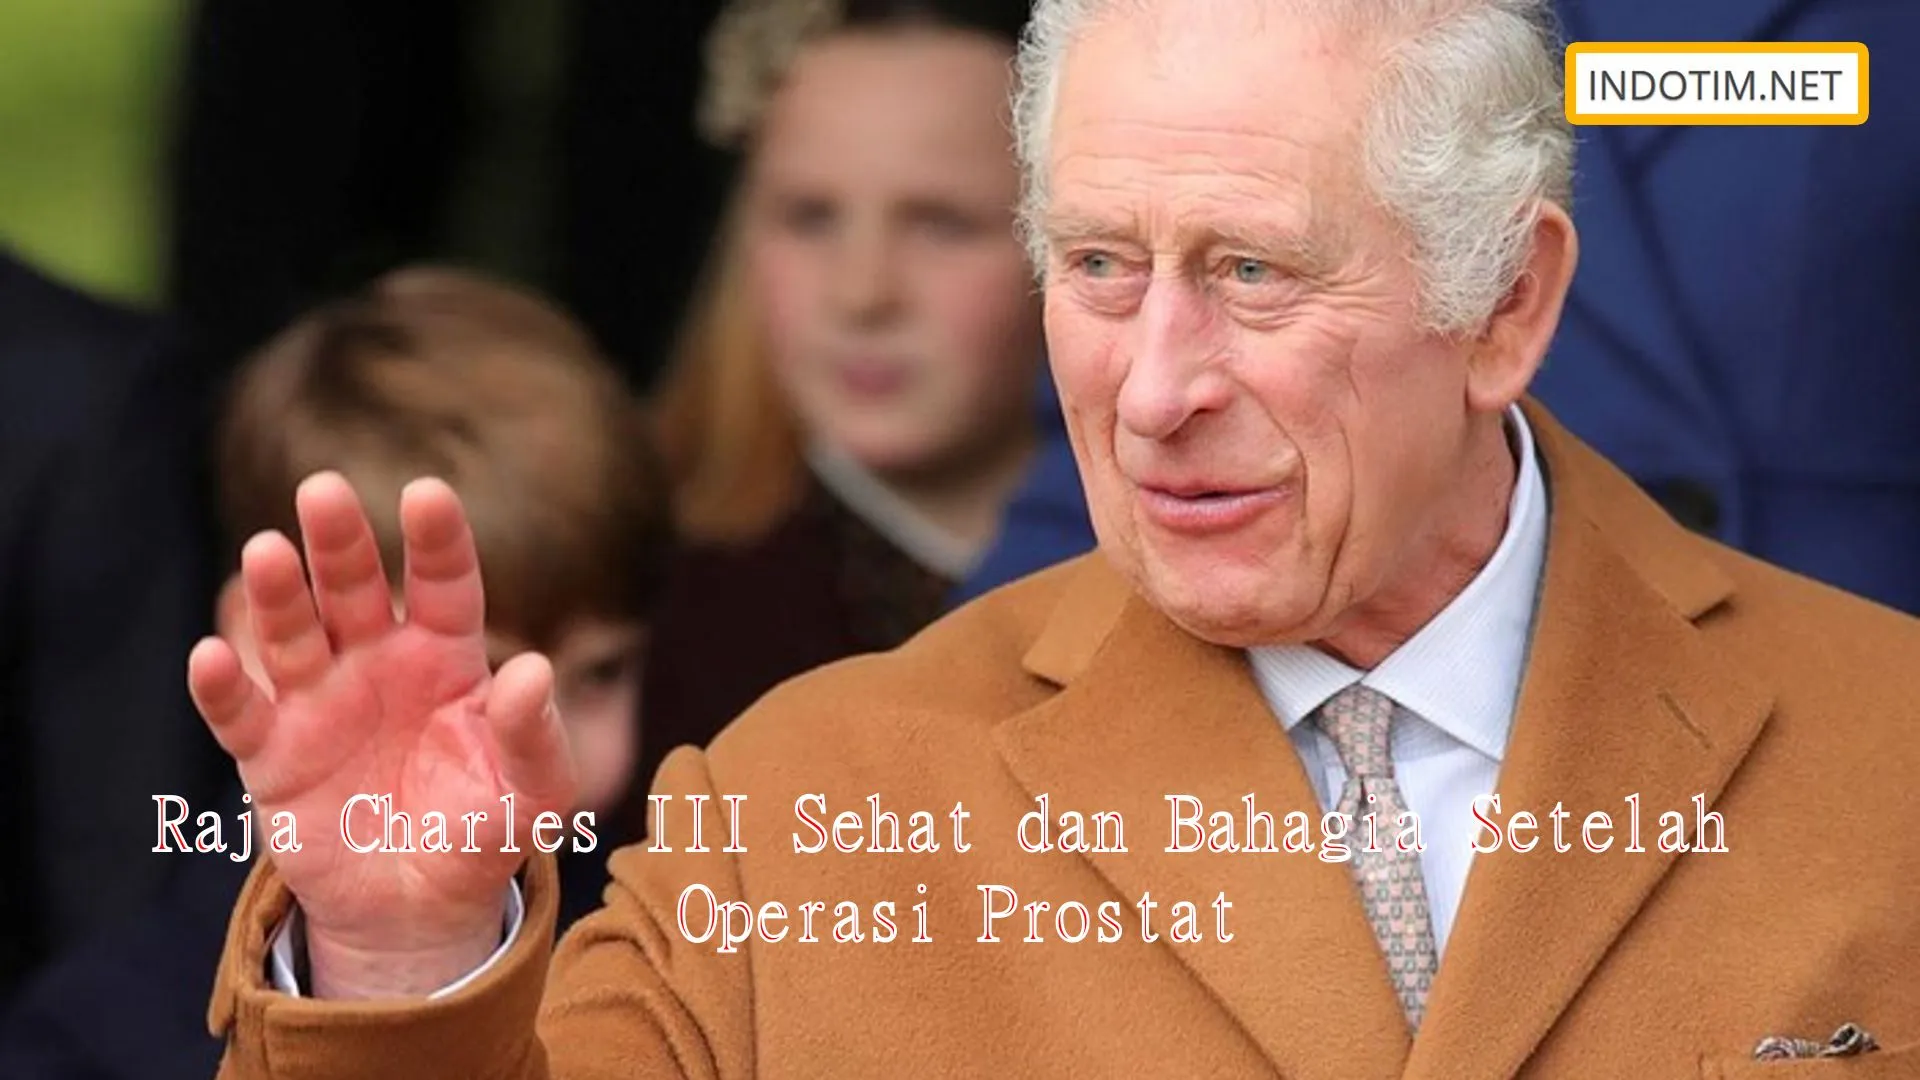 Raja Charles III Sehat dan Bahagia Setelah Operasi Prostat